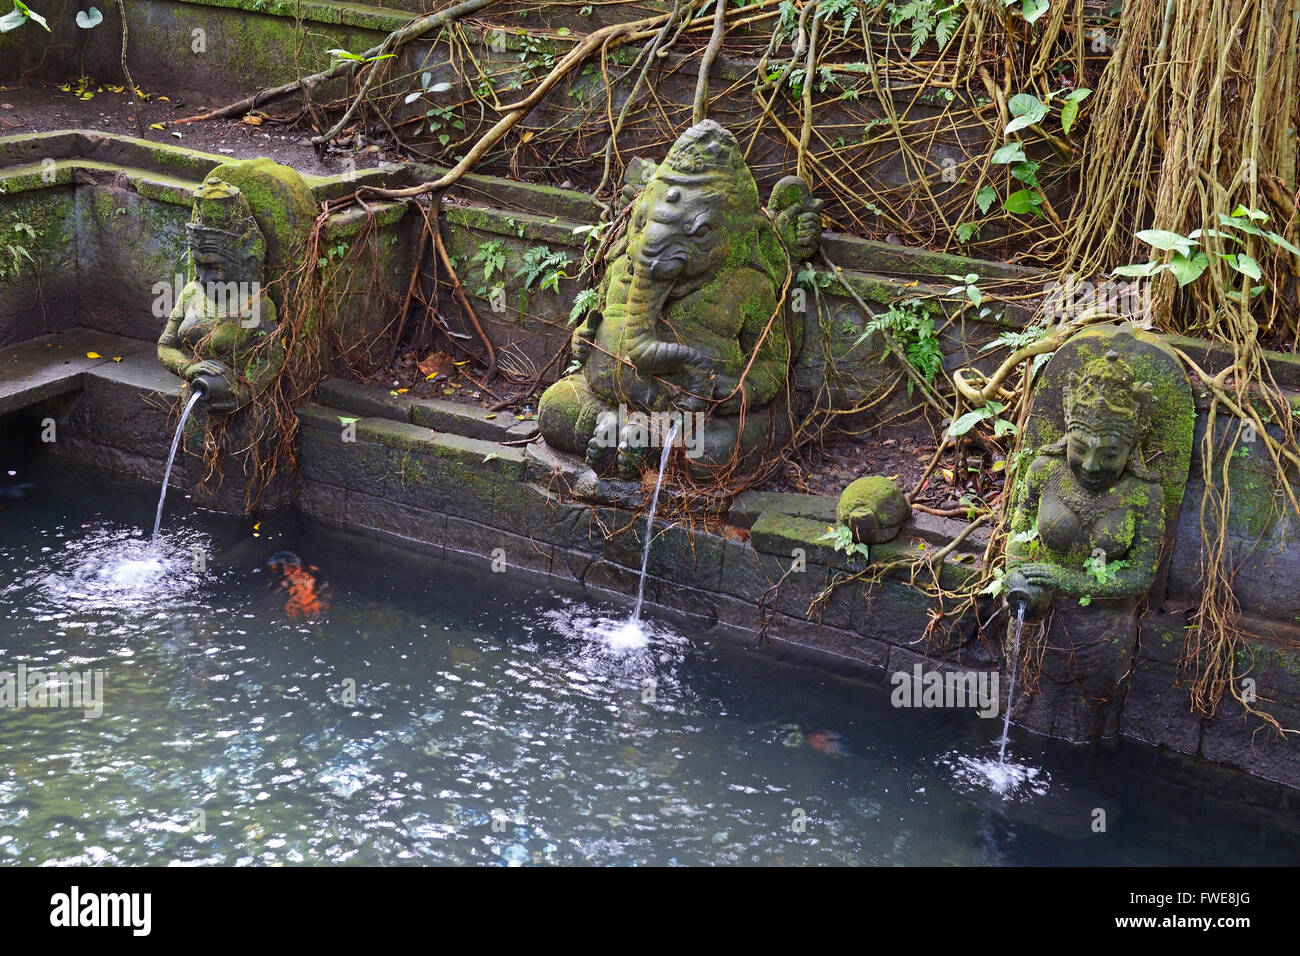 God statues as gargoyles, Holy Spring Temple, Sacred Monkey Forest, Ubud, Bali, Indonesia Stock Photo